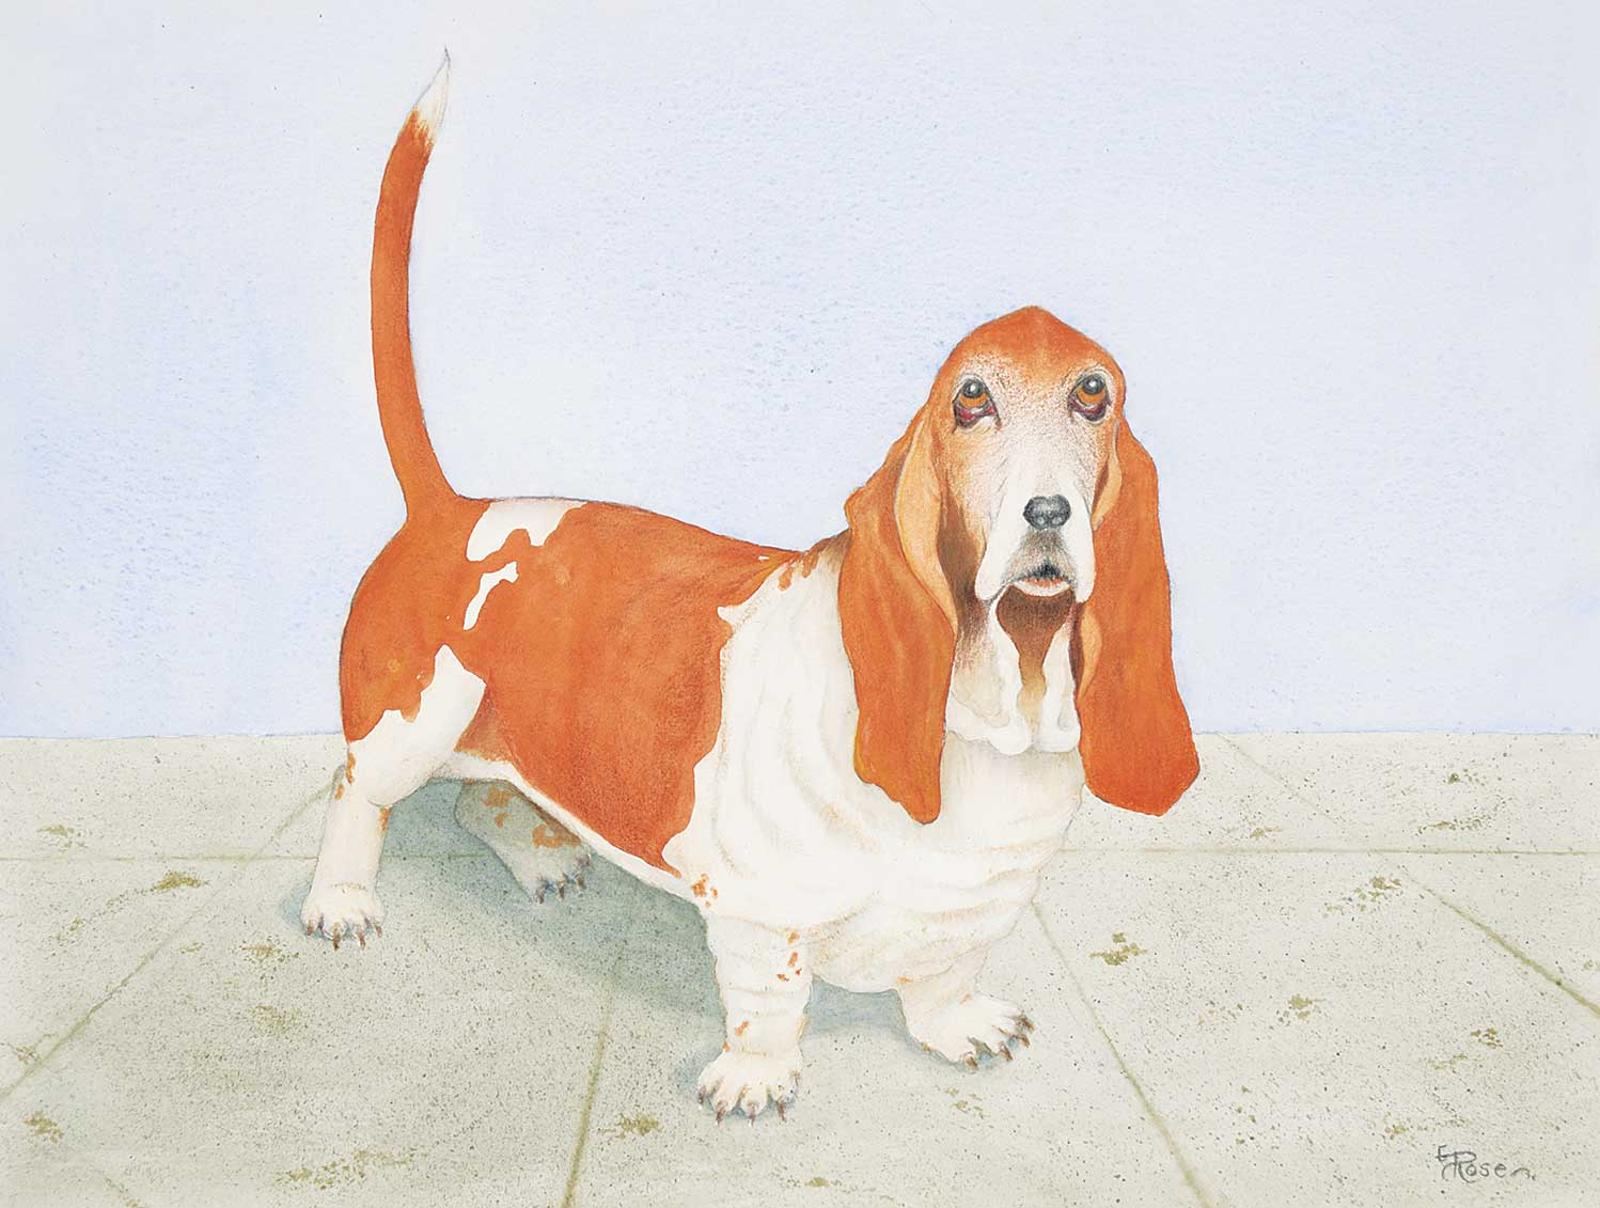 E. Rosen - Untitled - Puppy Eyes